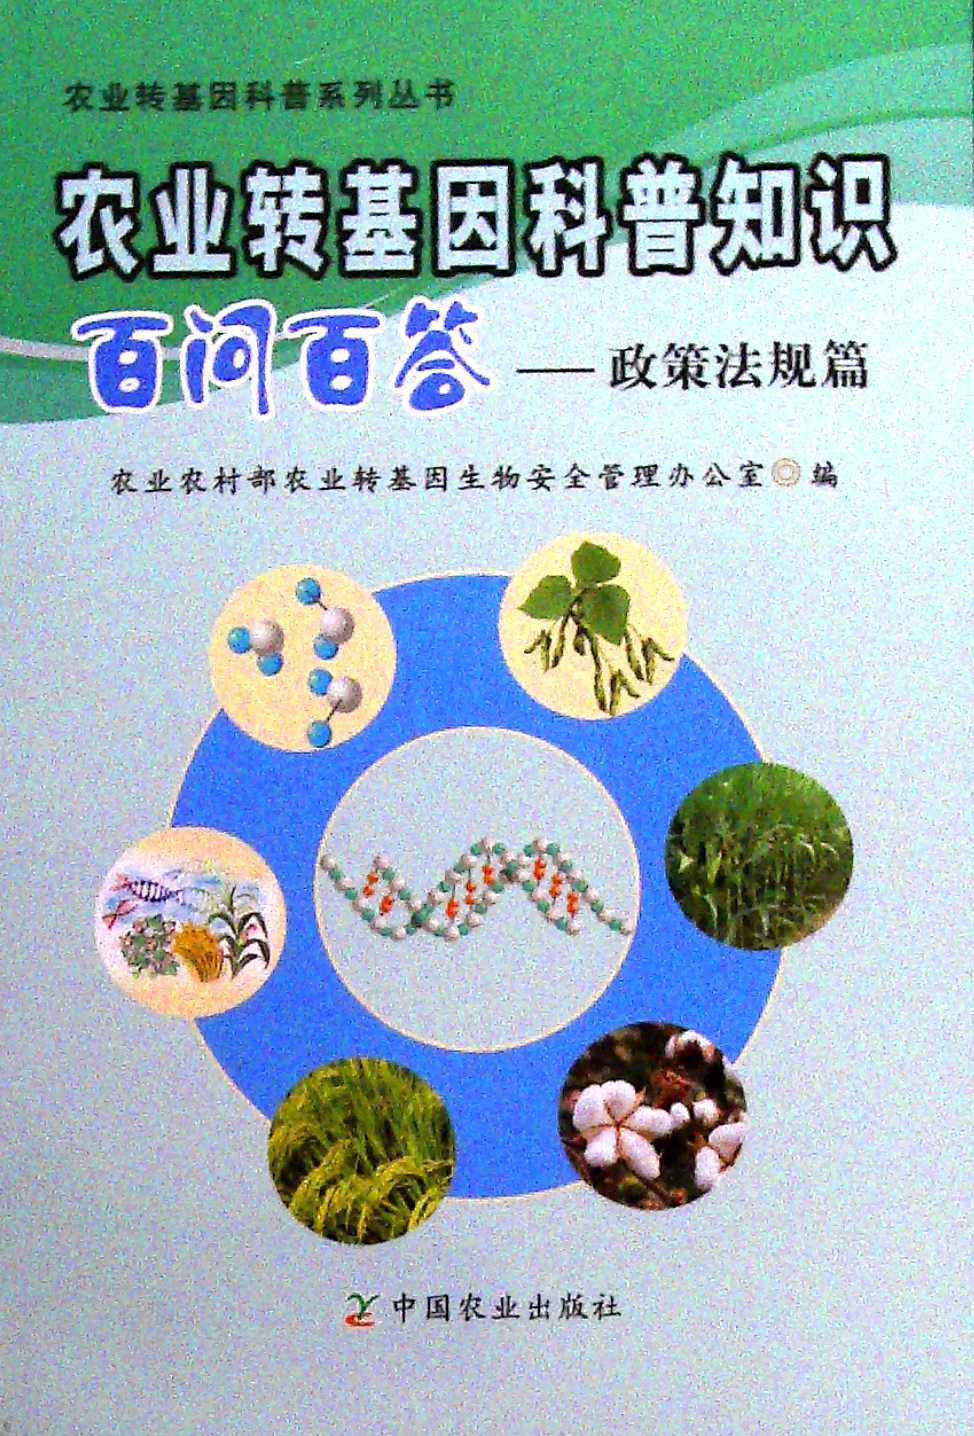 李辉基因食品_中国领导吃转基因食品_基因改造食品